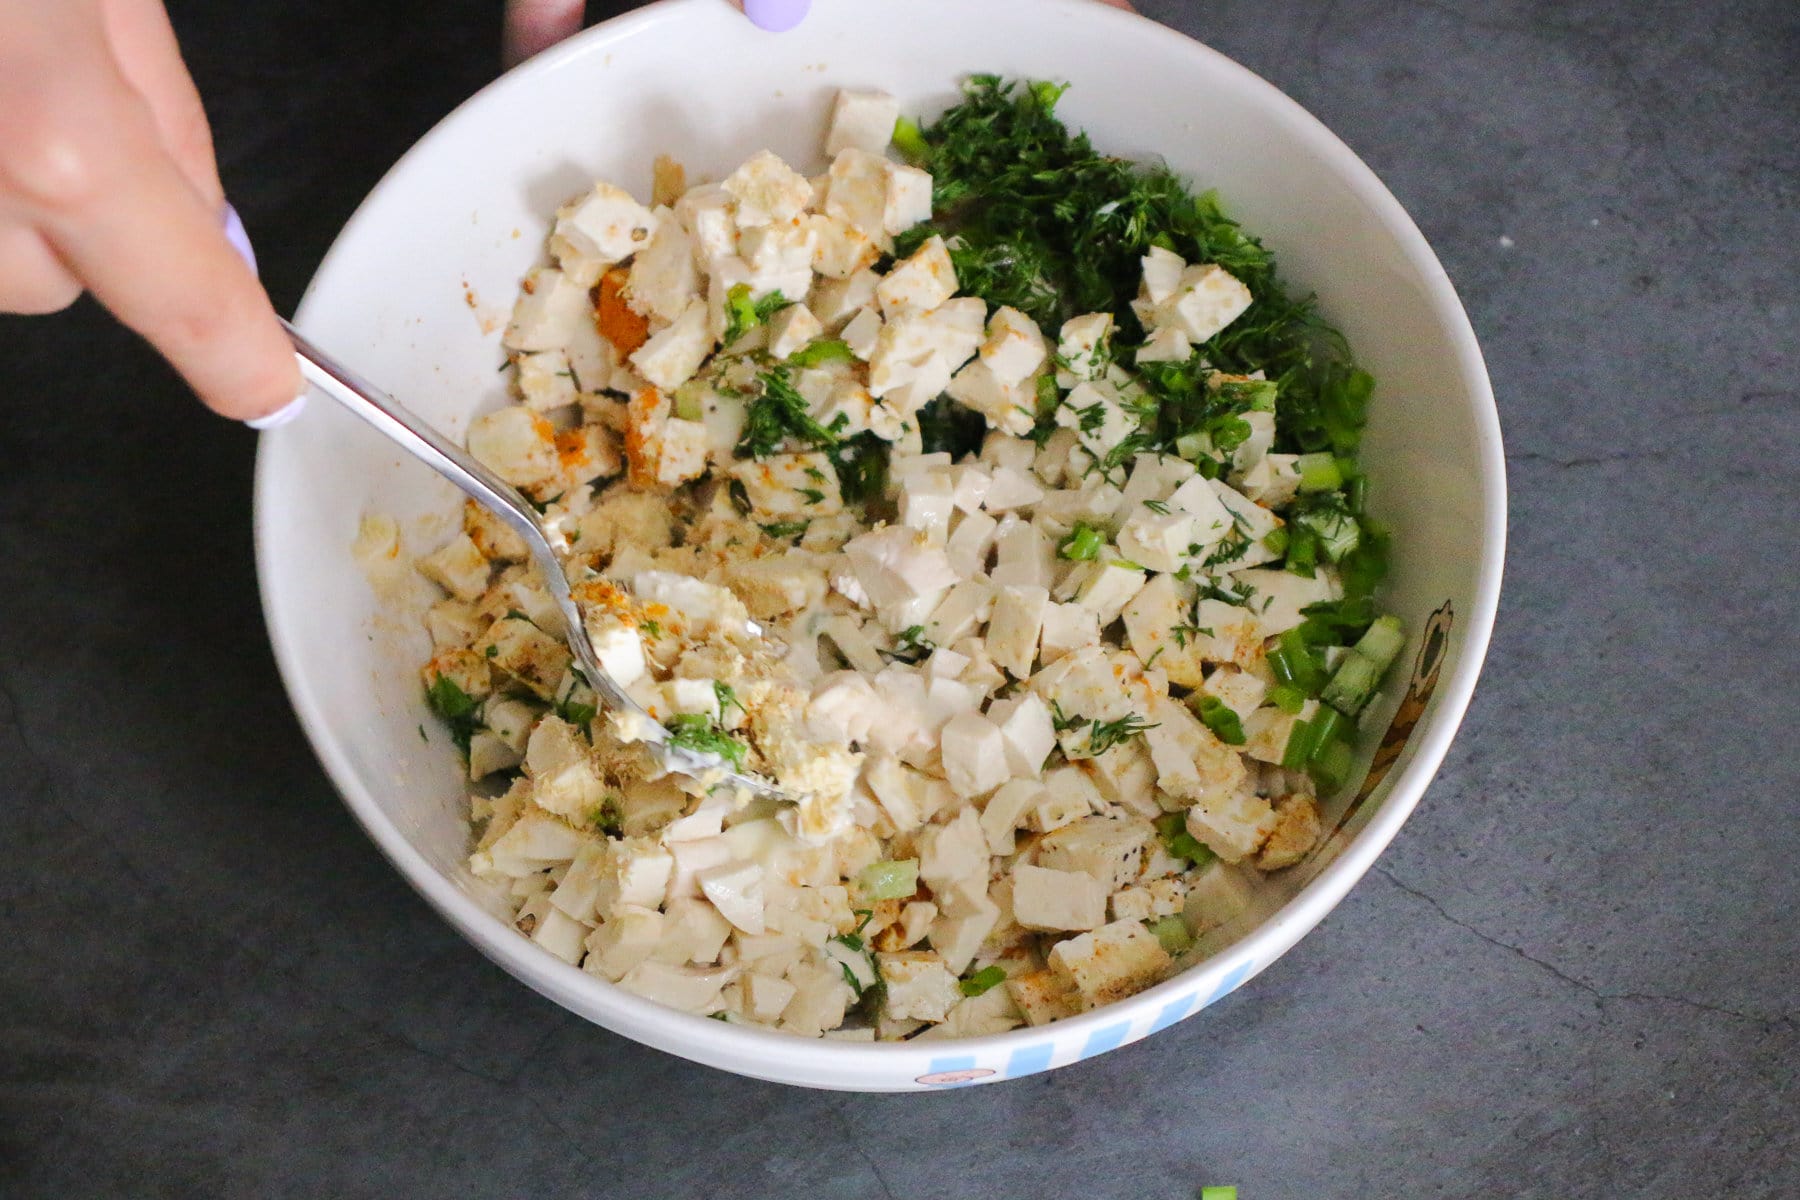 Mix the vegan egg salad